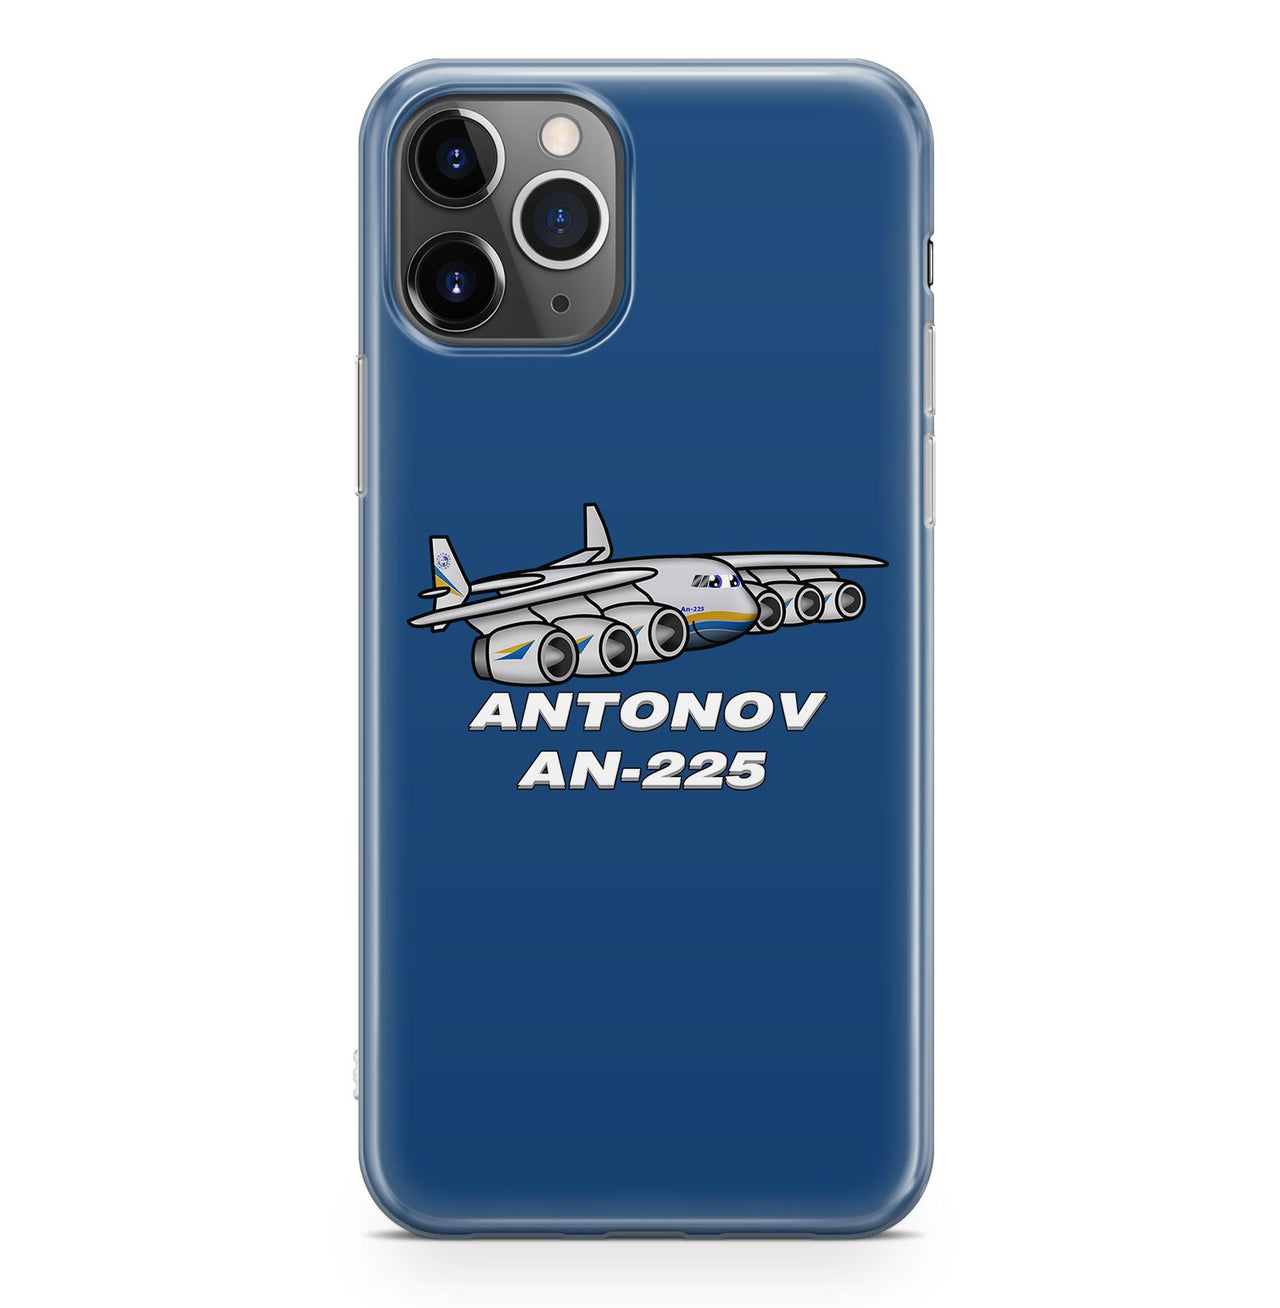 Antonov AN-225 (25) Designed iPhone Cases